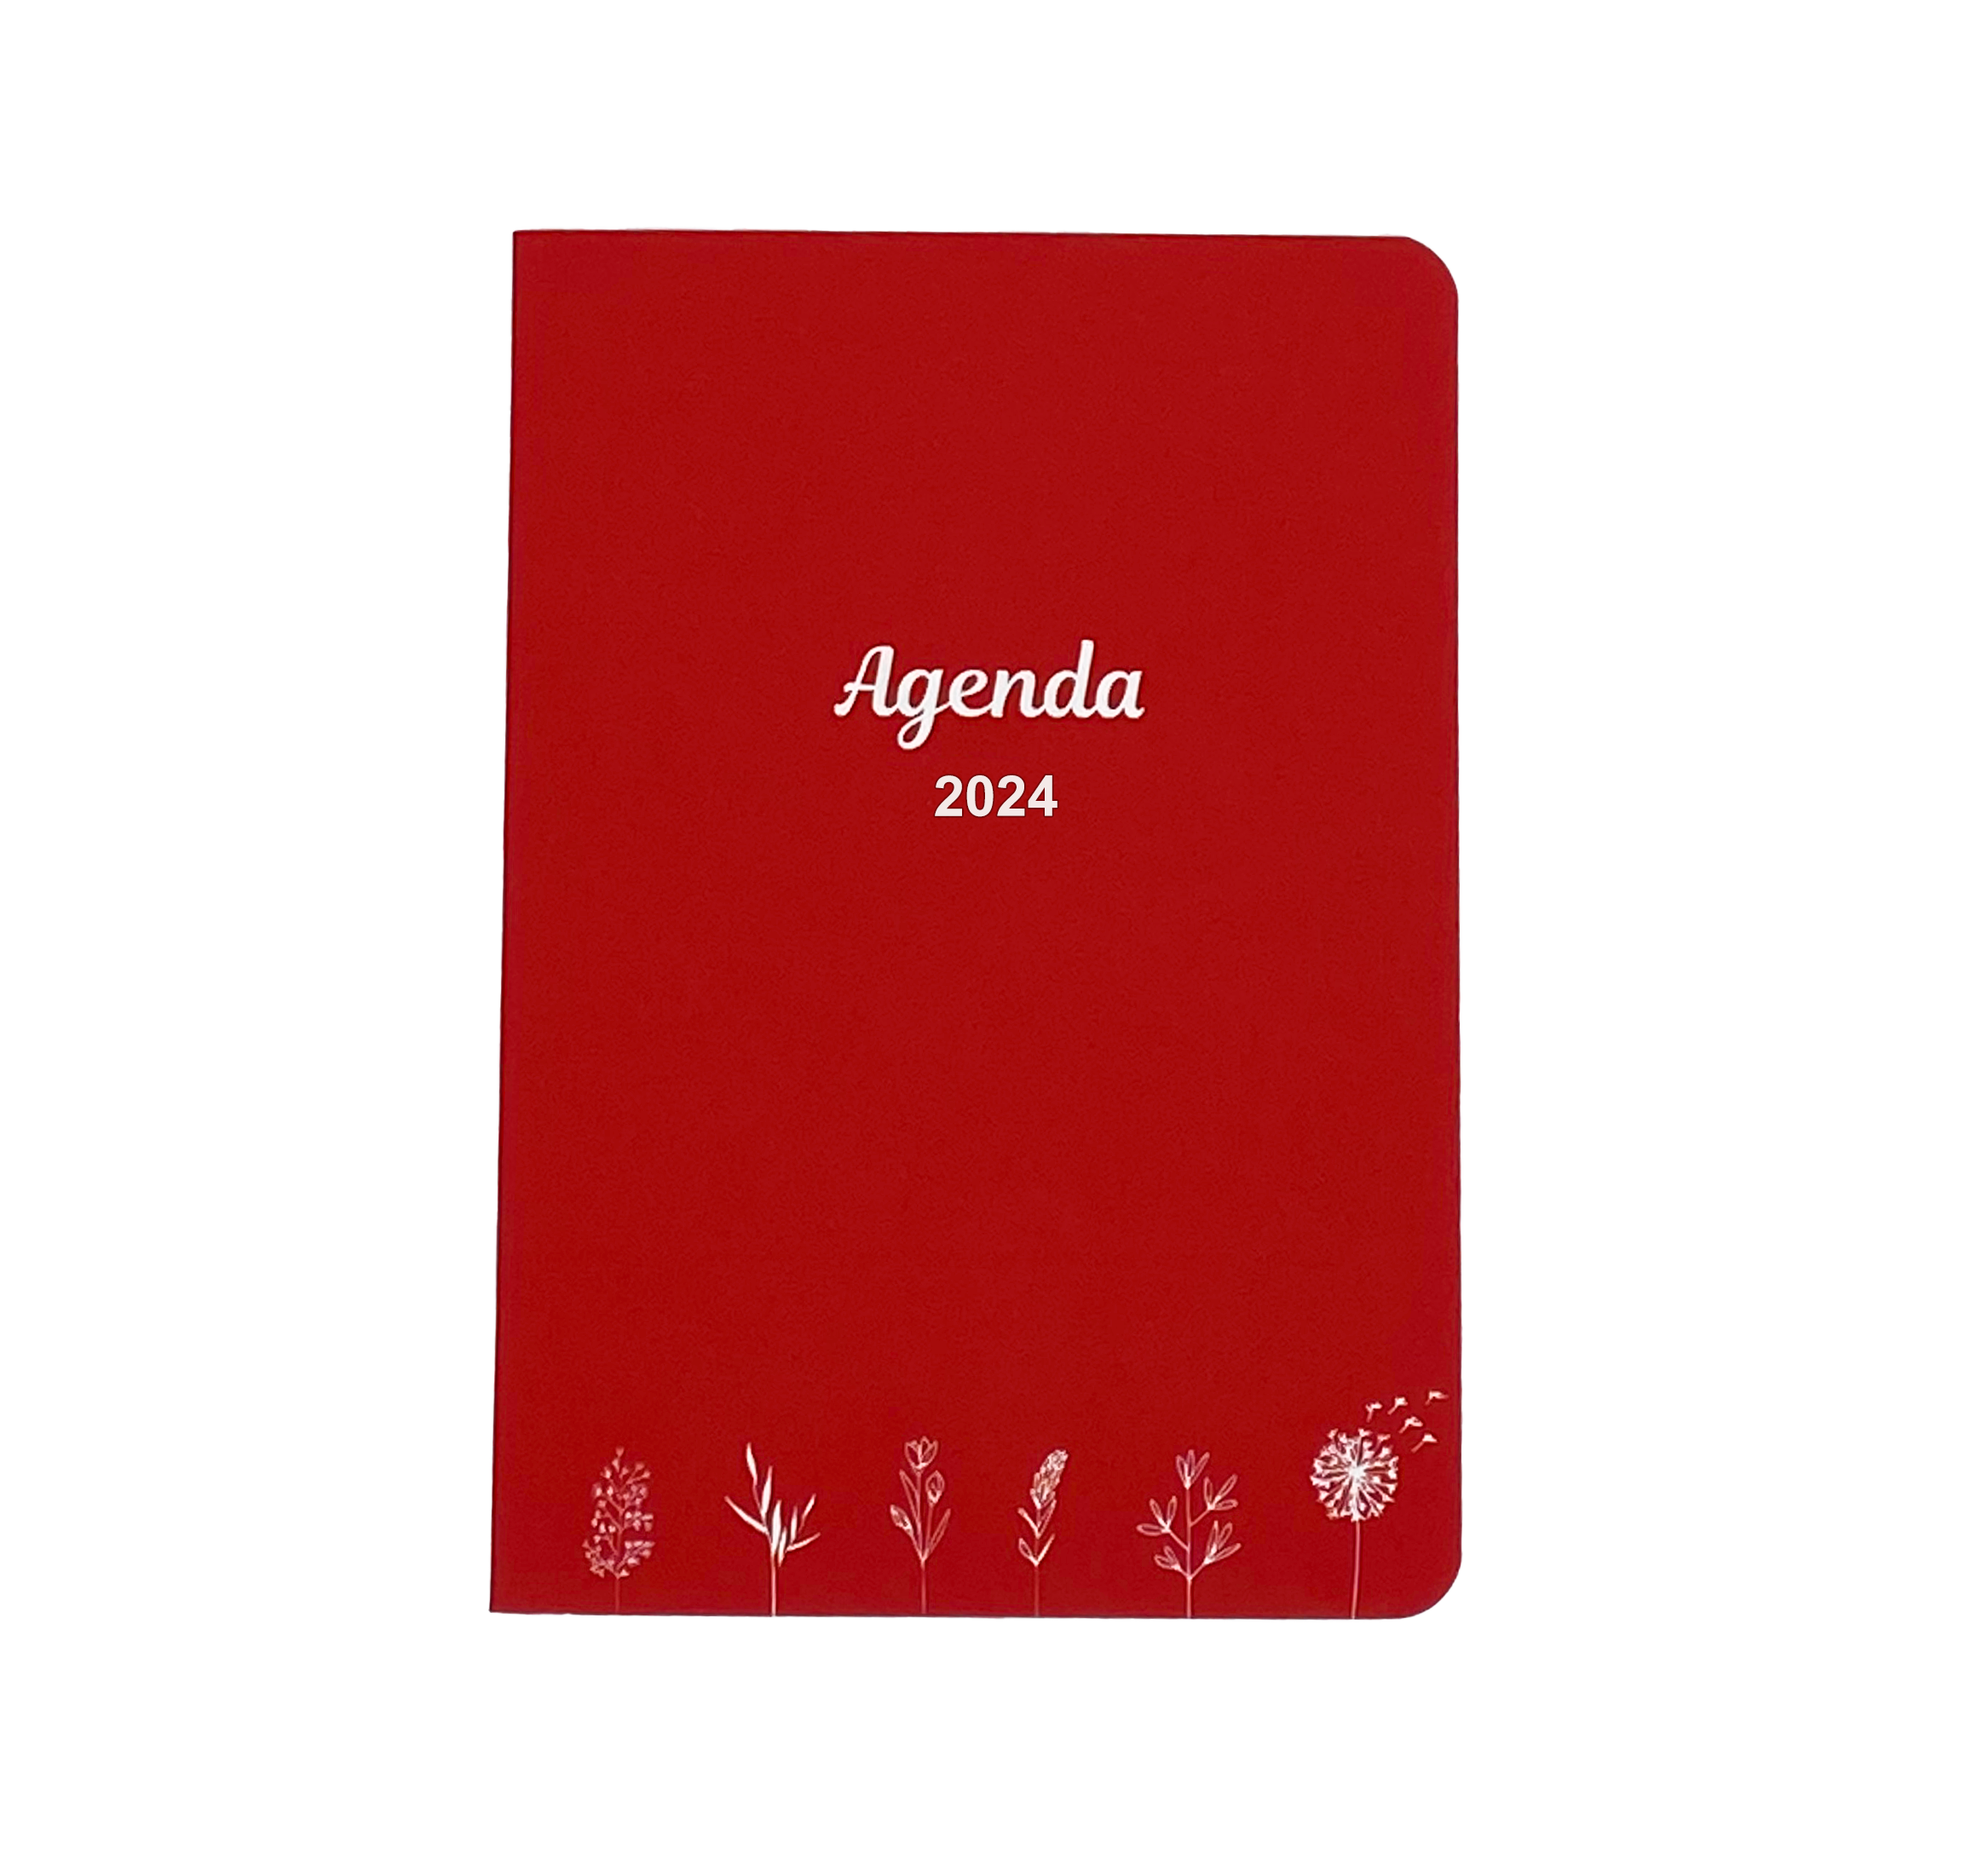 L'Agenda Notebook - Service Agenda